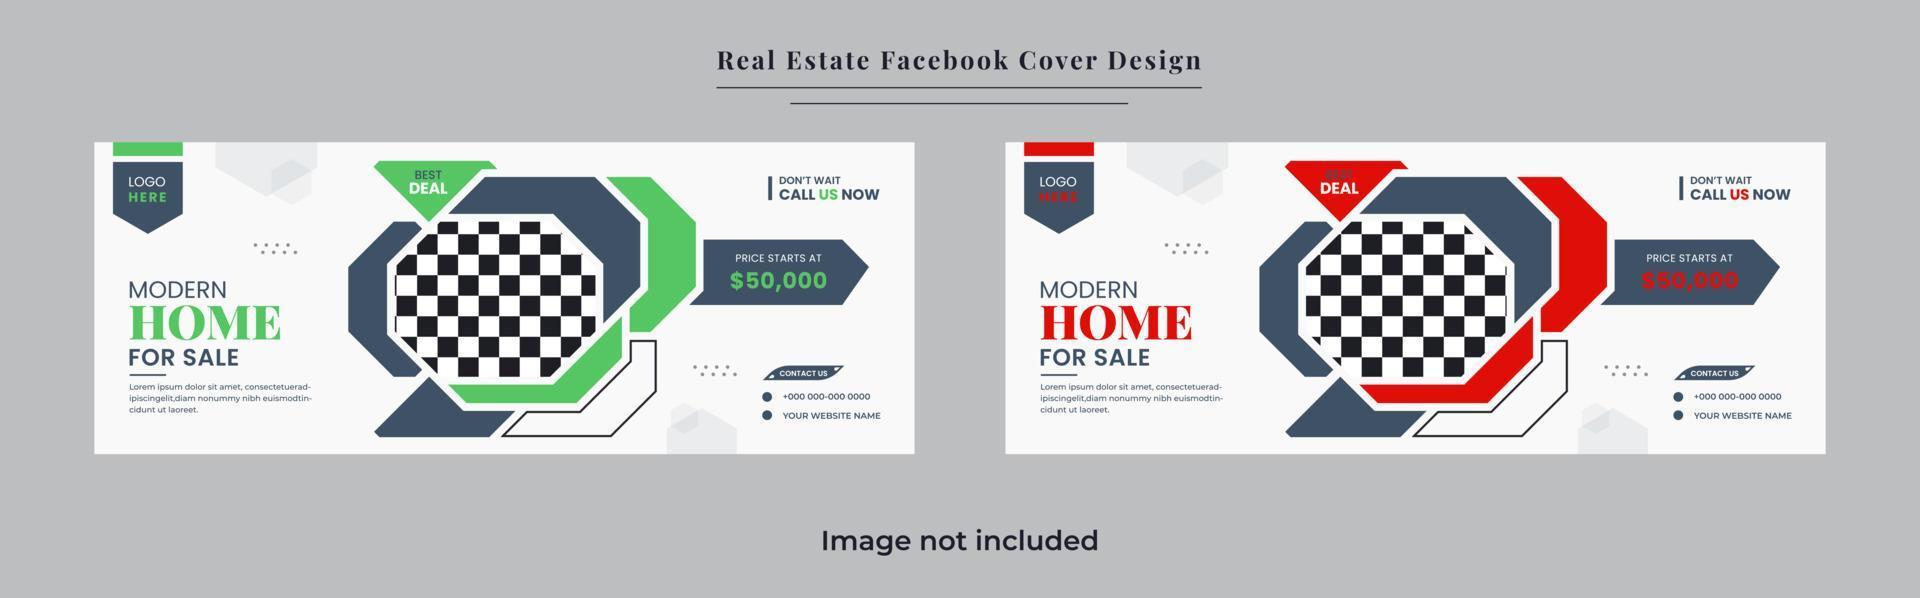 venta o alquiler de casas y propiedades modernas y hermosas mínimas diseño de conjunto de banner de portada de redes sociales digitales vector